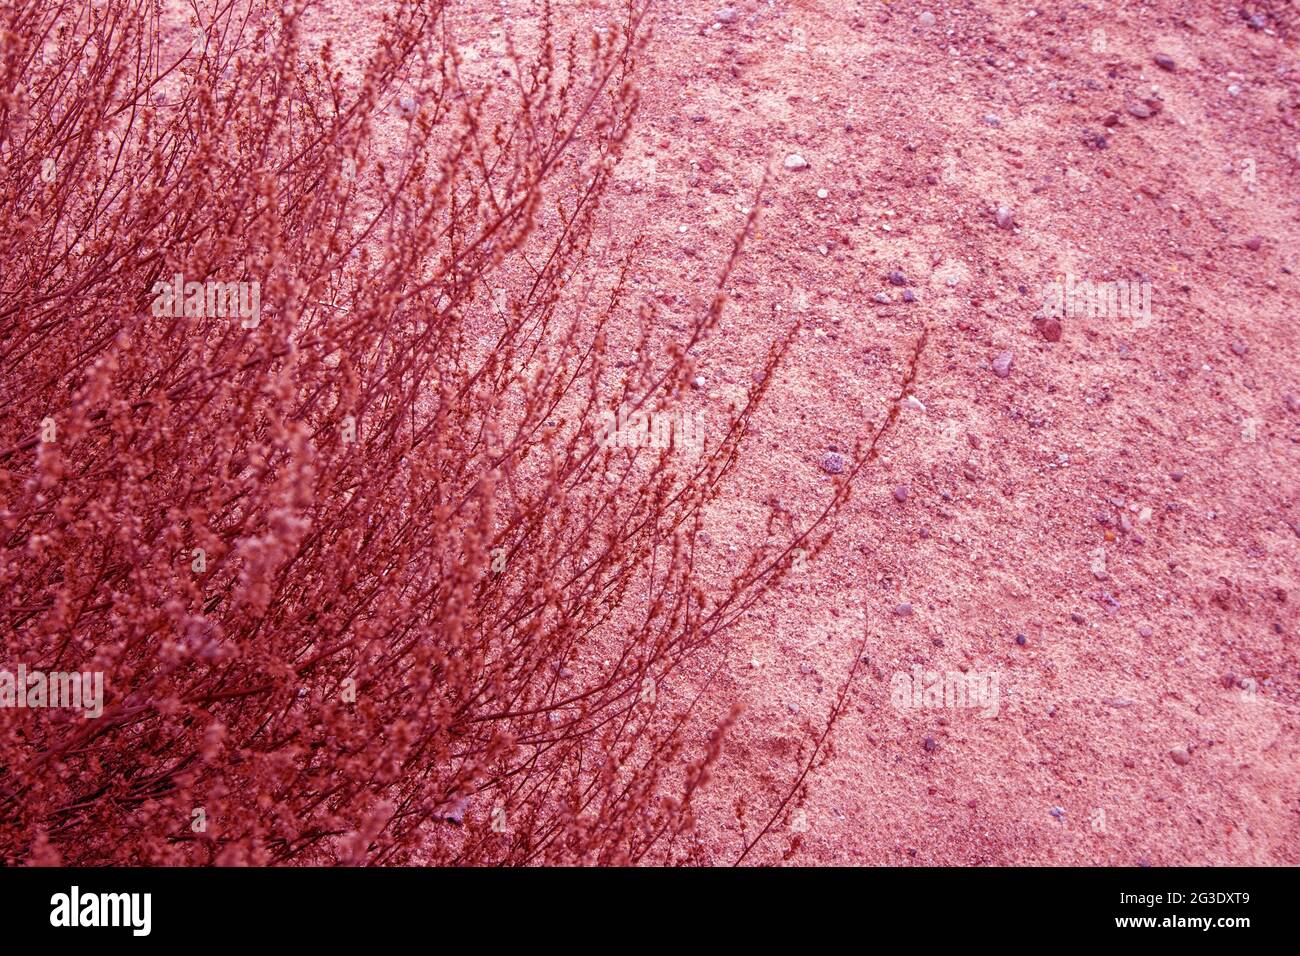 Parte de exuberante arbusto marchito de planta de estepa que crece en suelo arenoso en tonos rosados Foto de stock